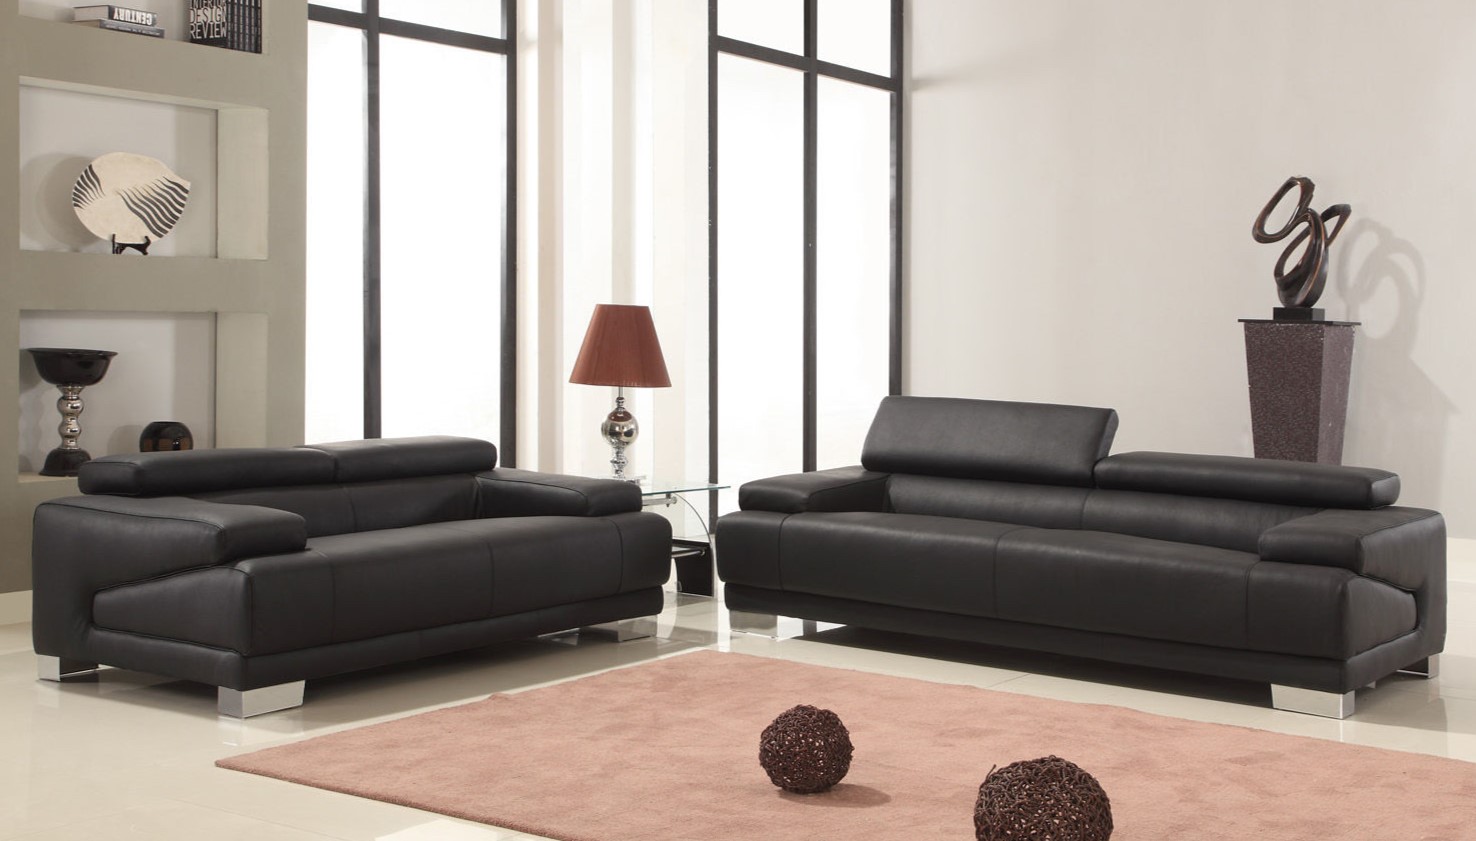 Черные диваны оригинальной формы прекрасно вписались в современную гостиную